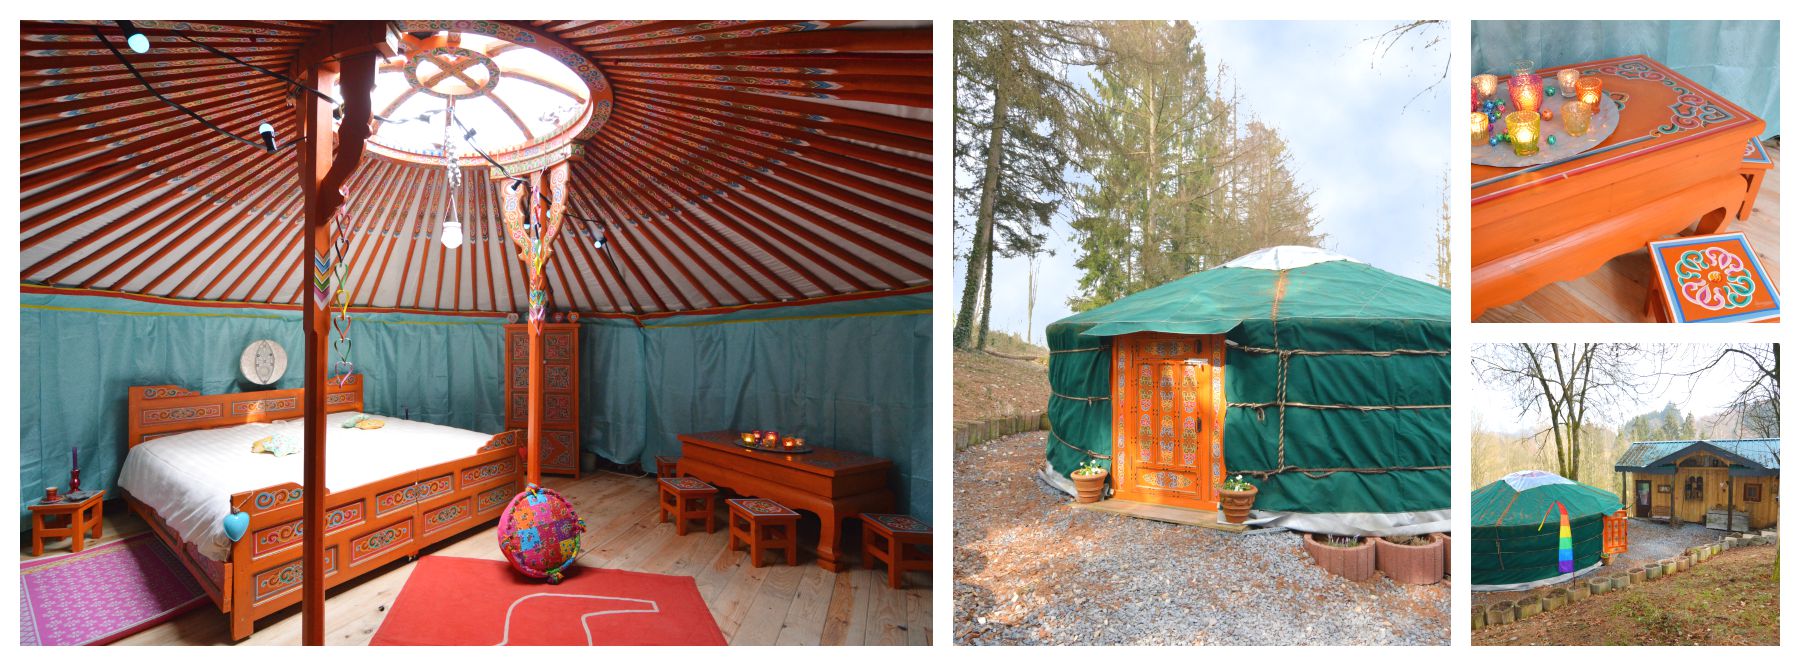 BE-6660-51 yurt en huisje sprookje Houffalize Ardennen Belvilla vakantiehuizen